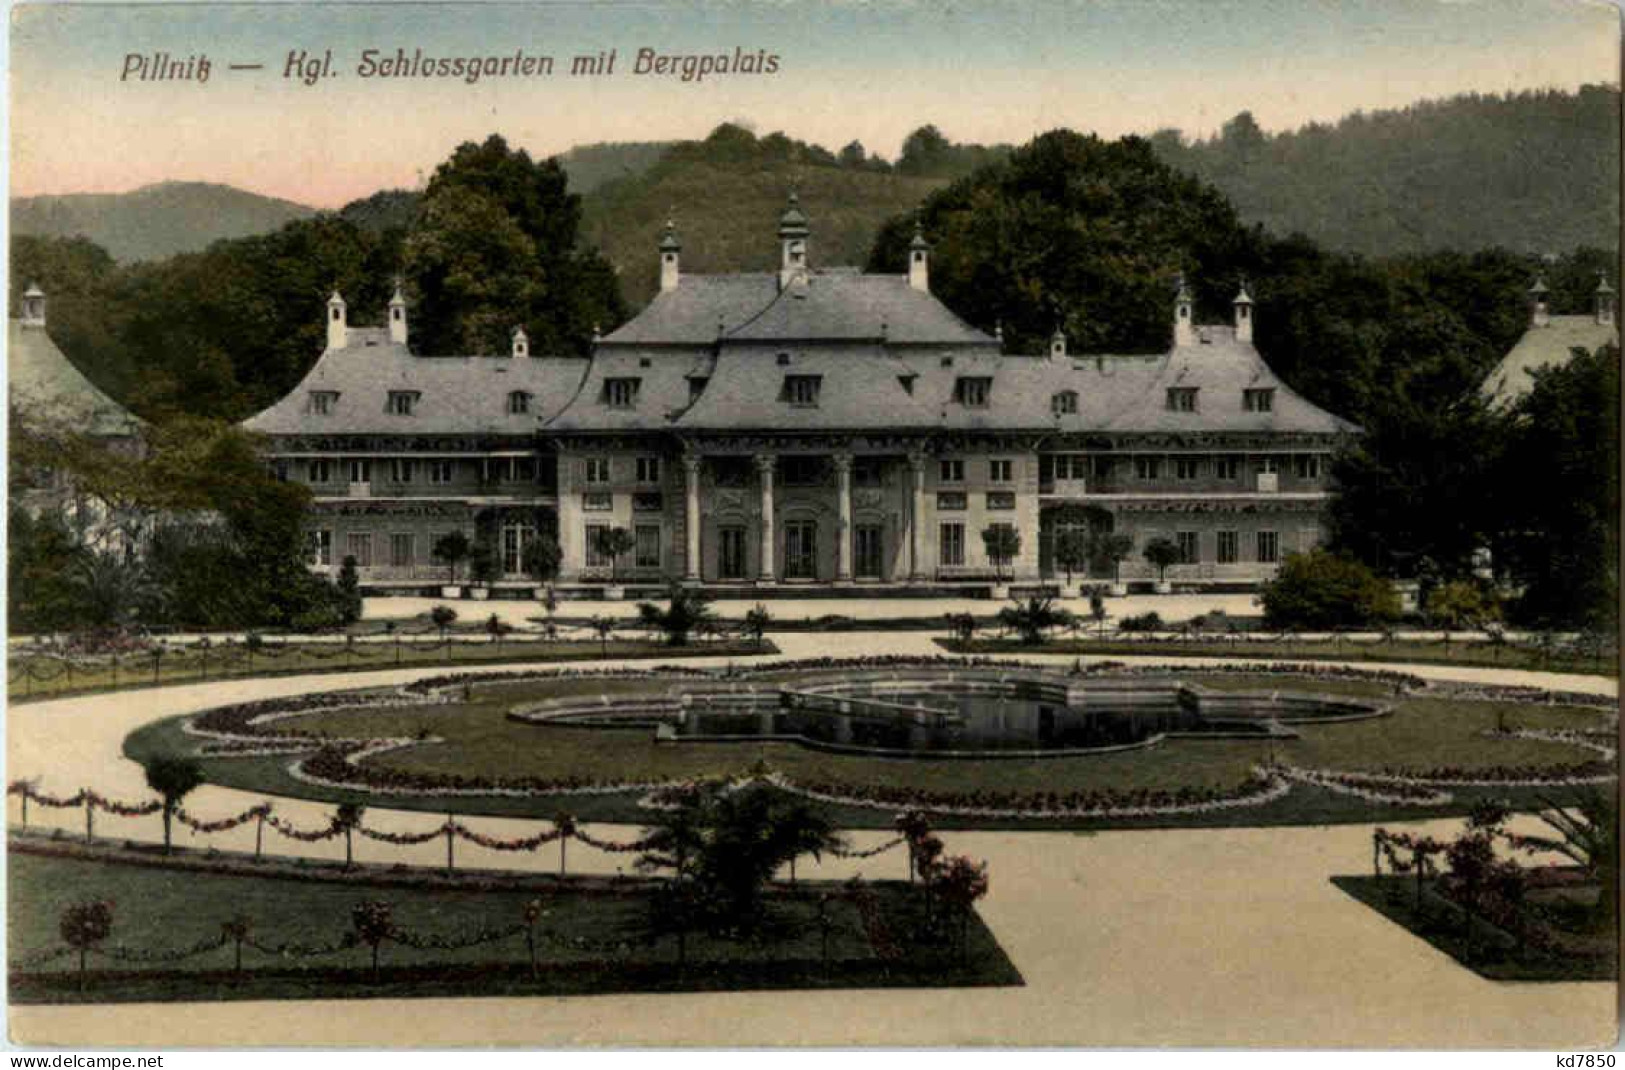 Pillnitz - Schlossgarten - Pillnitz